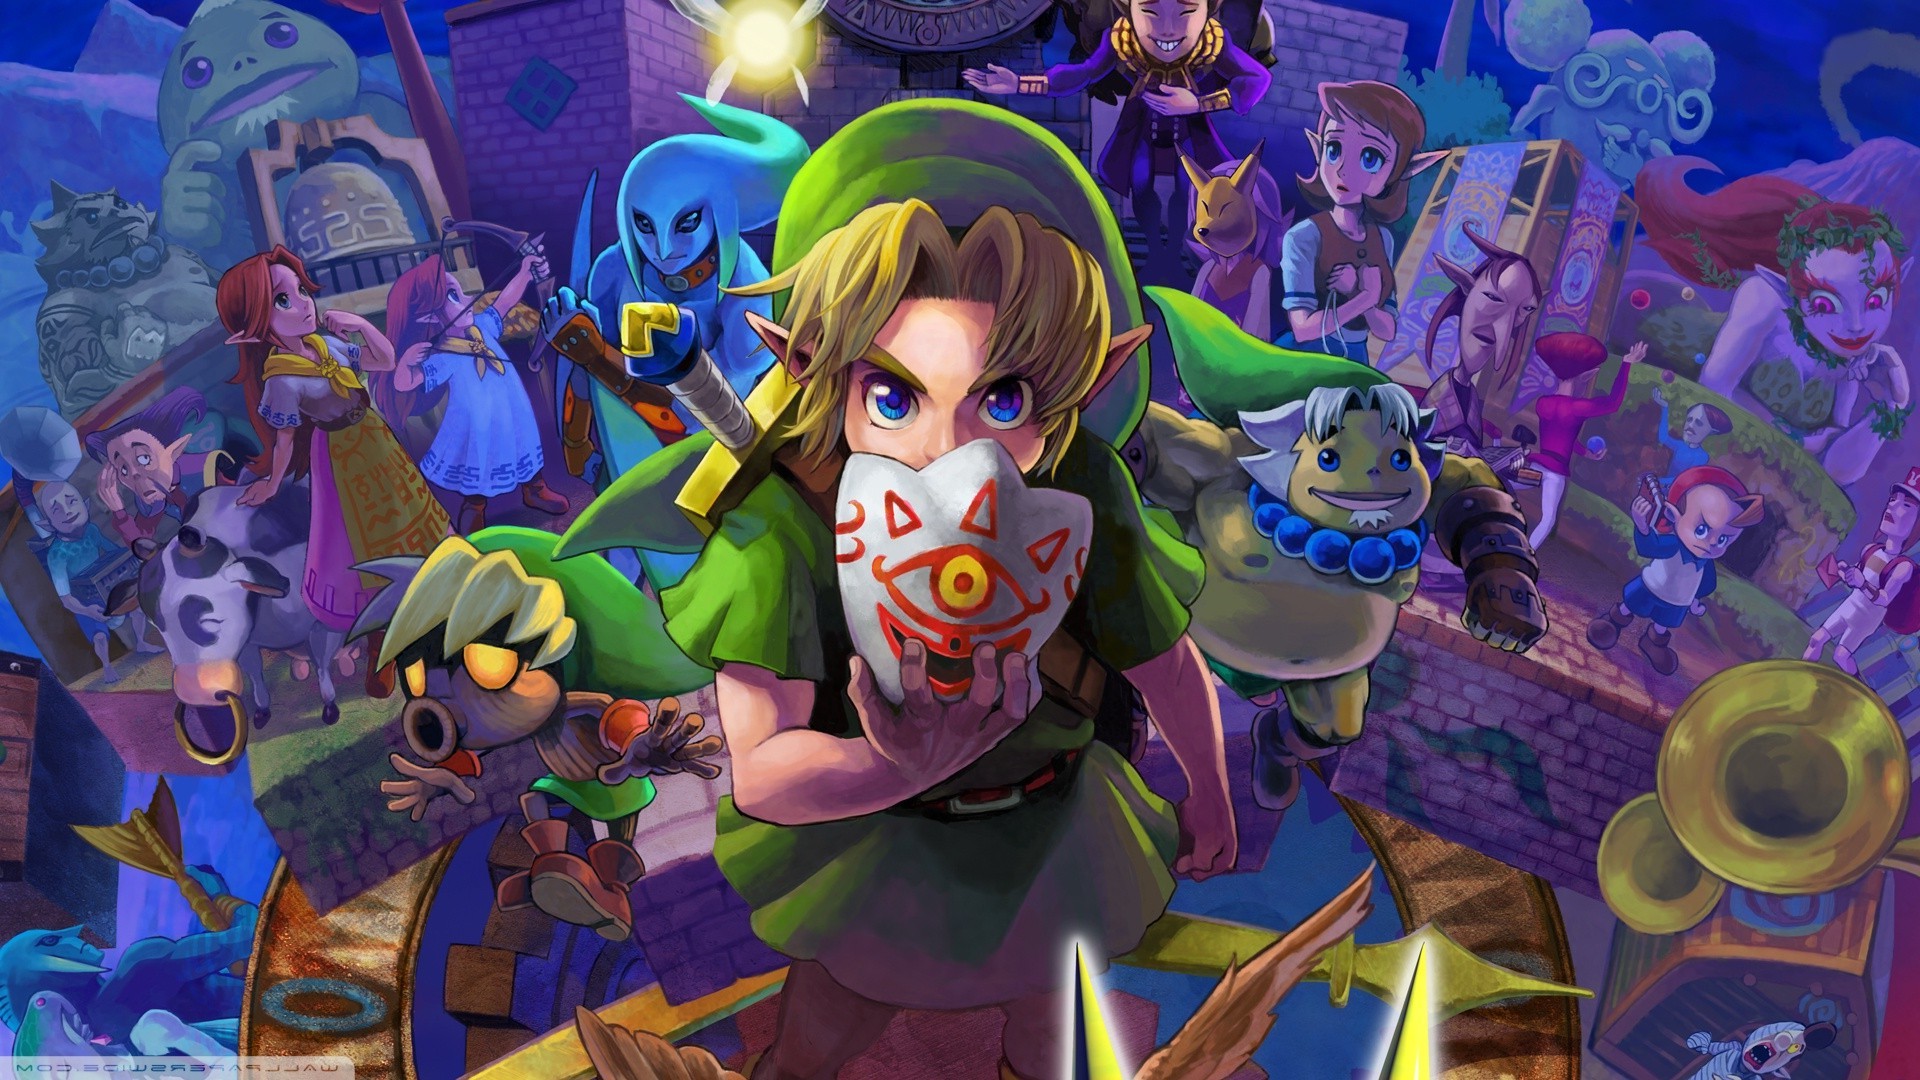 Legend of Zelda Nintendo 64 mod game links Ocarina of Time, Majora's Mask